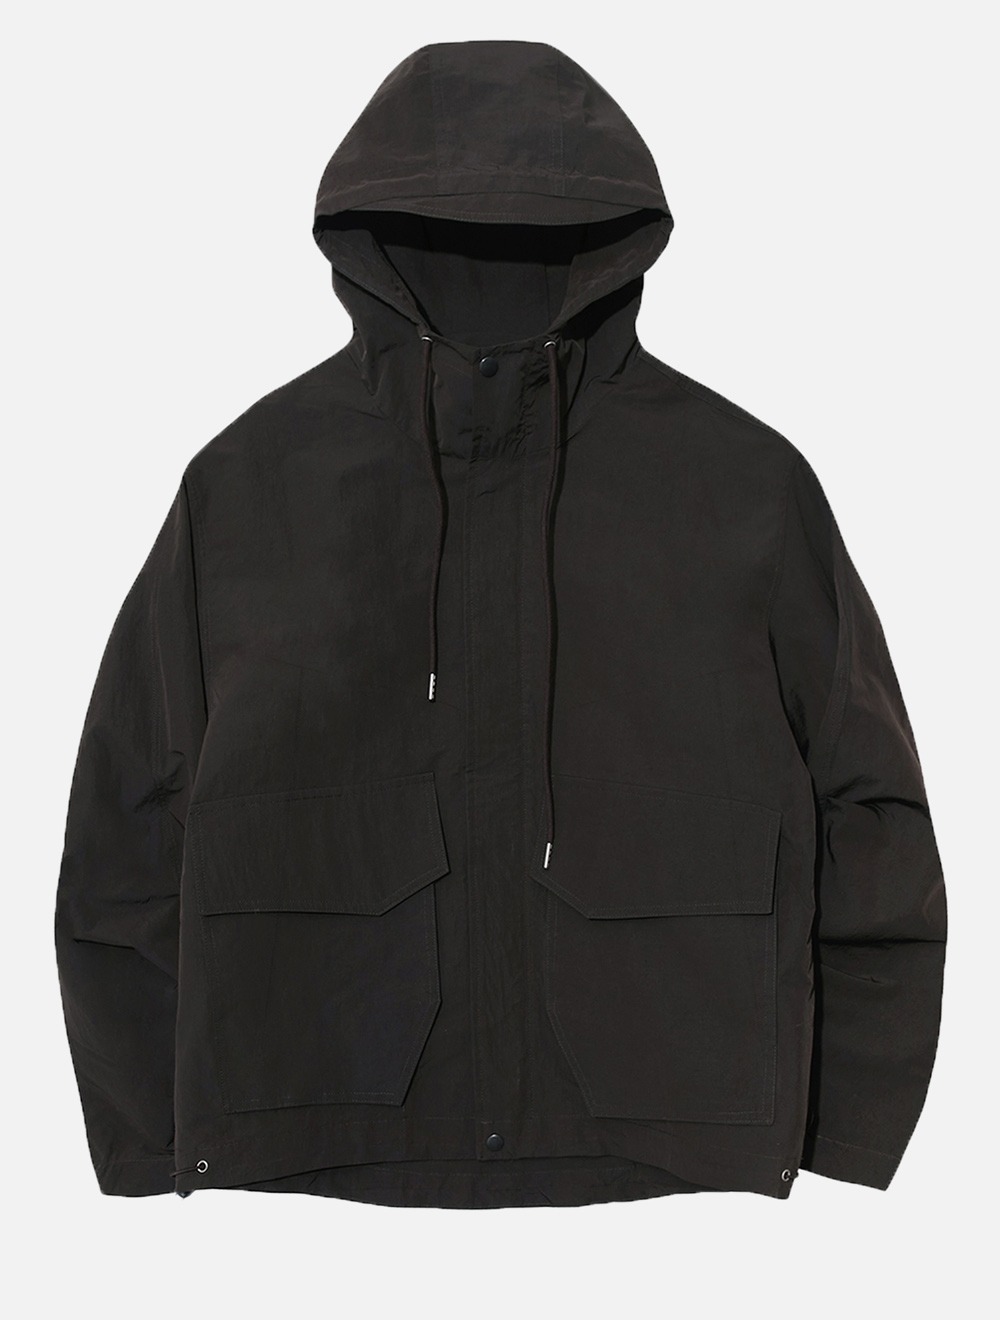 hooded jacket (deep brown)